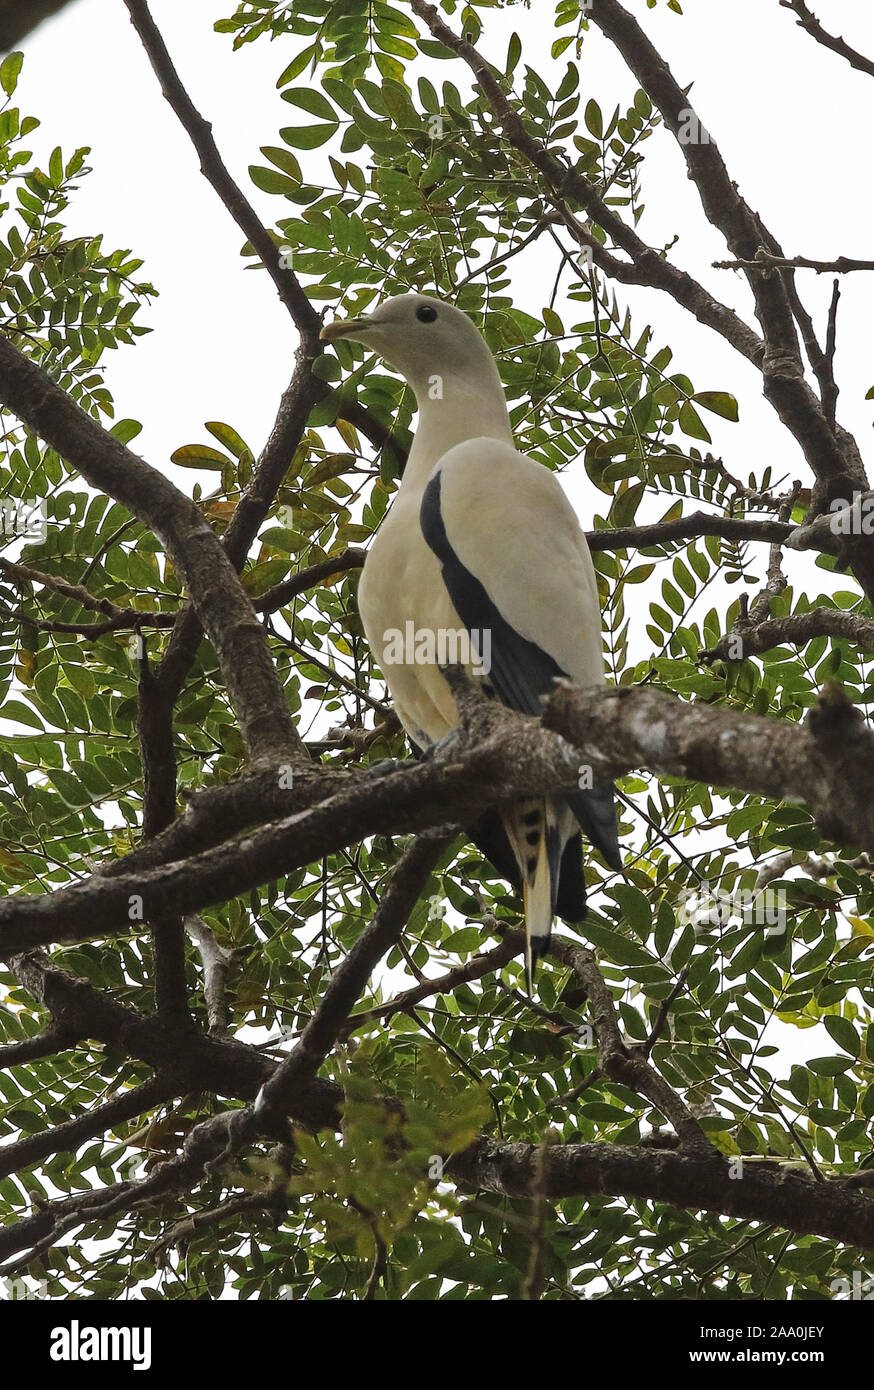 Imperial Torresian-pigeon (Ducula spilorrhoa) Direction générale des adultes perché sur Port Moresby, Papouasie Nouvelle Guinée Juillet Banque D'Images